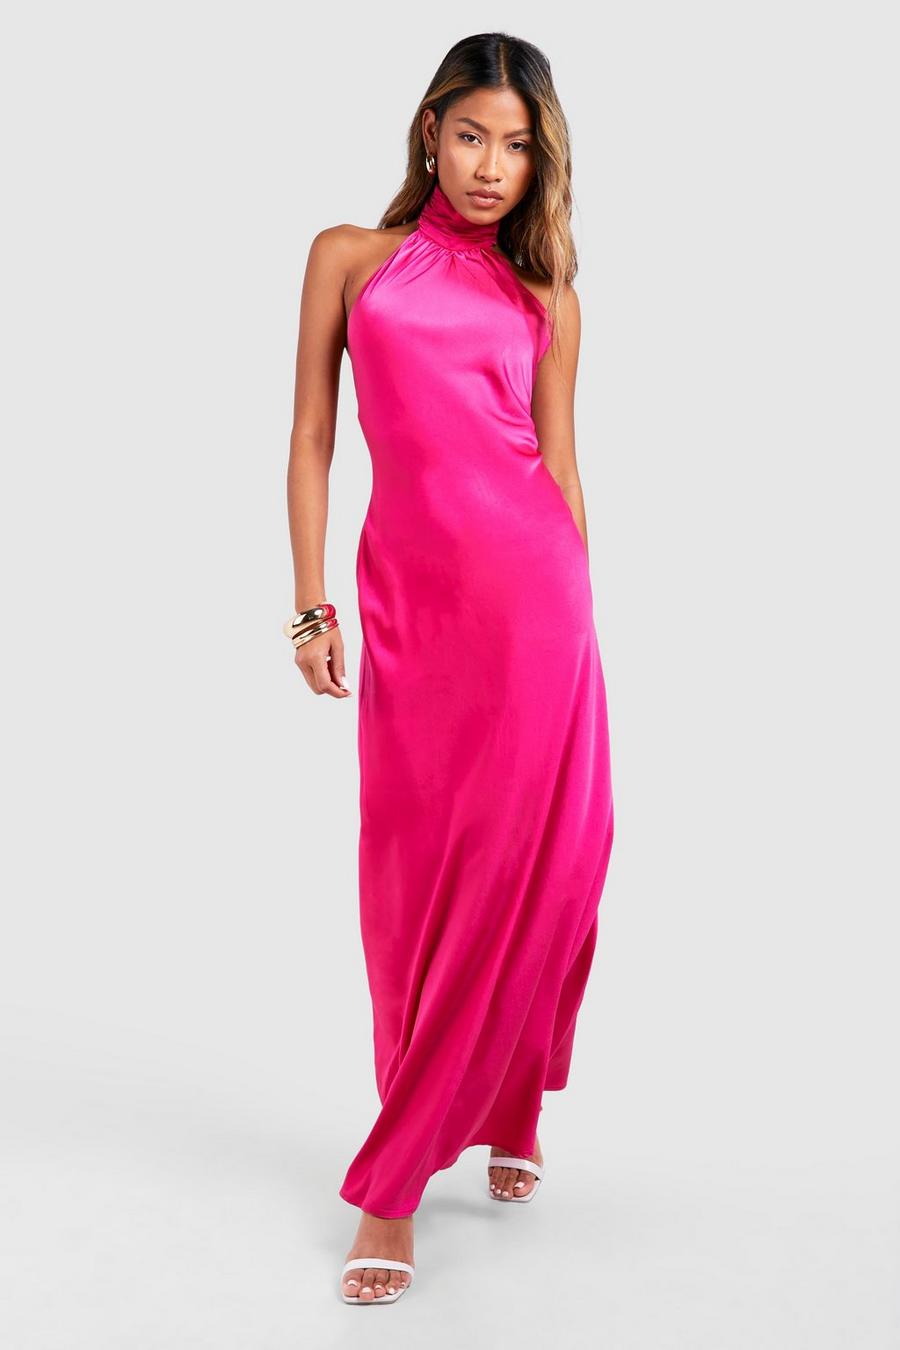 Hot pink Satin Halter Maxi Dress